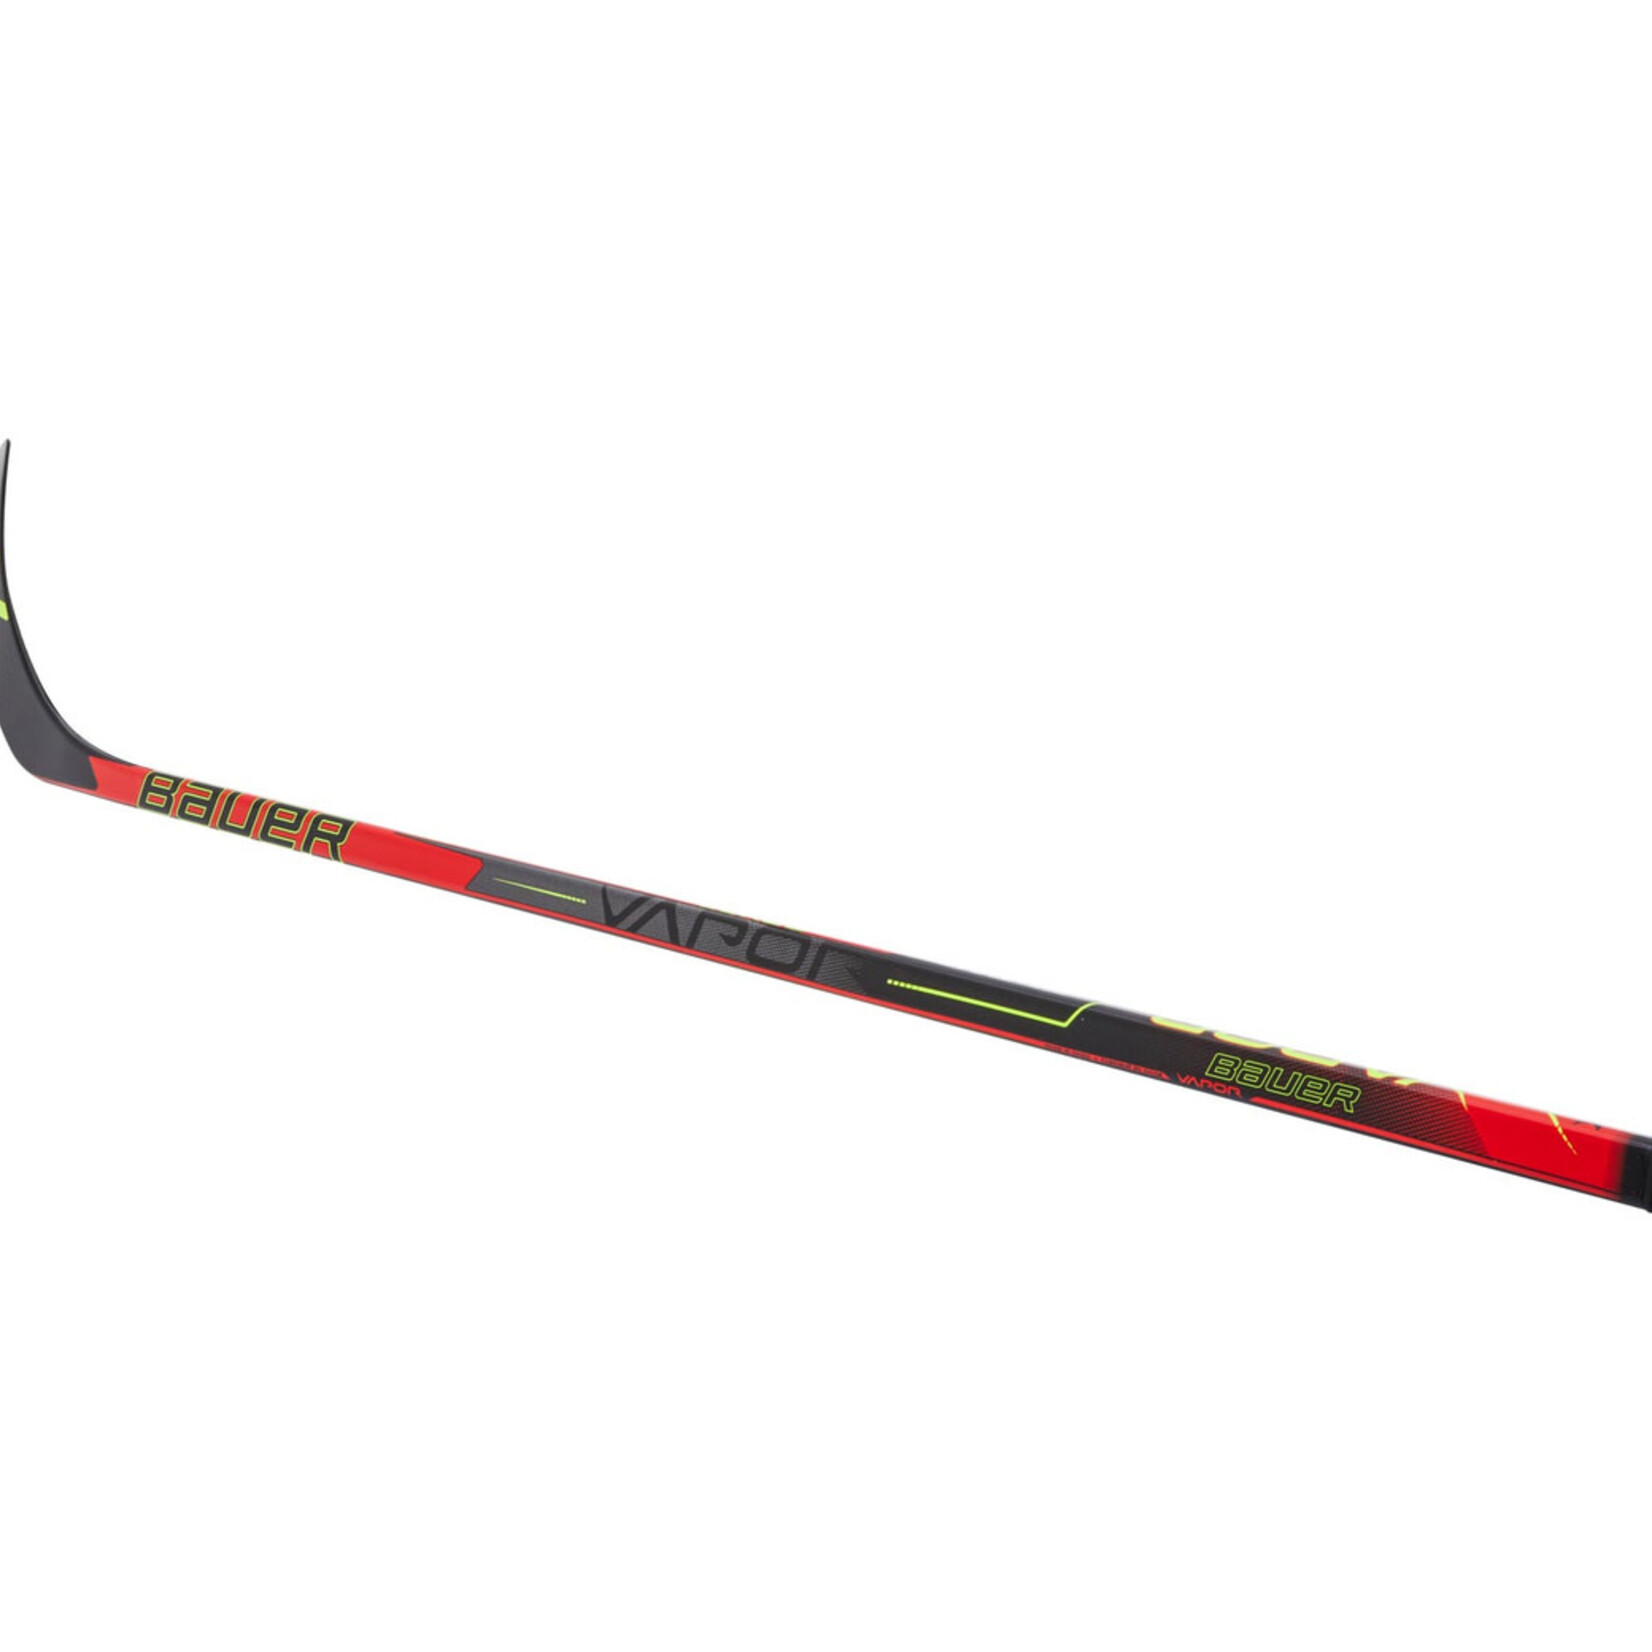 Bauer Bauer Hockey Stick, S21 Vapor, Grip, 46", Youth